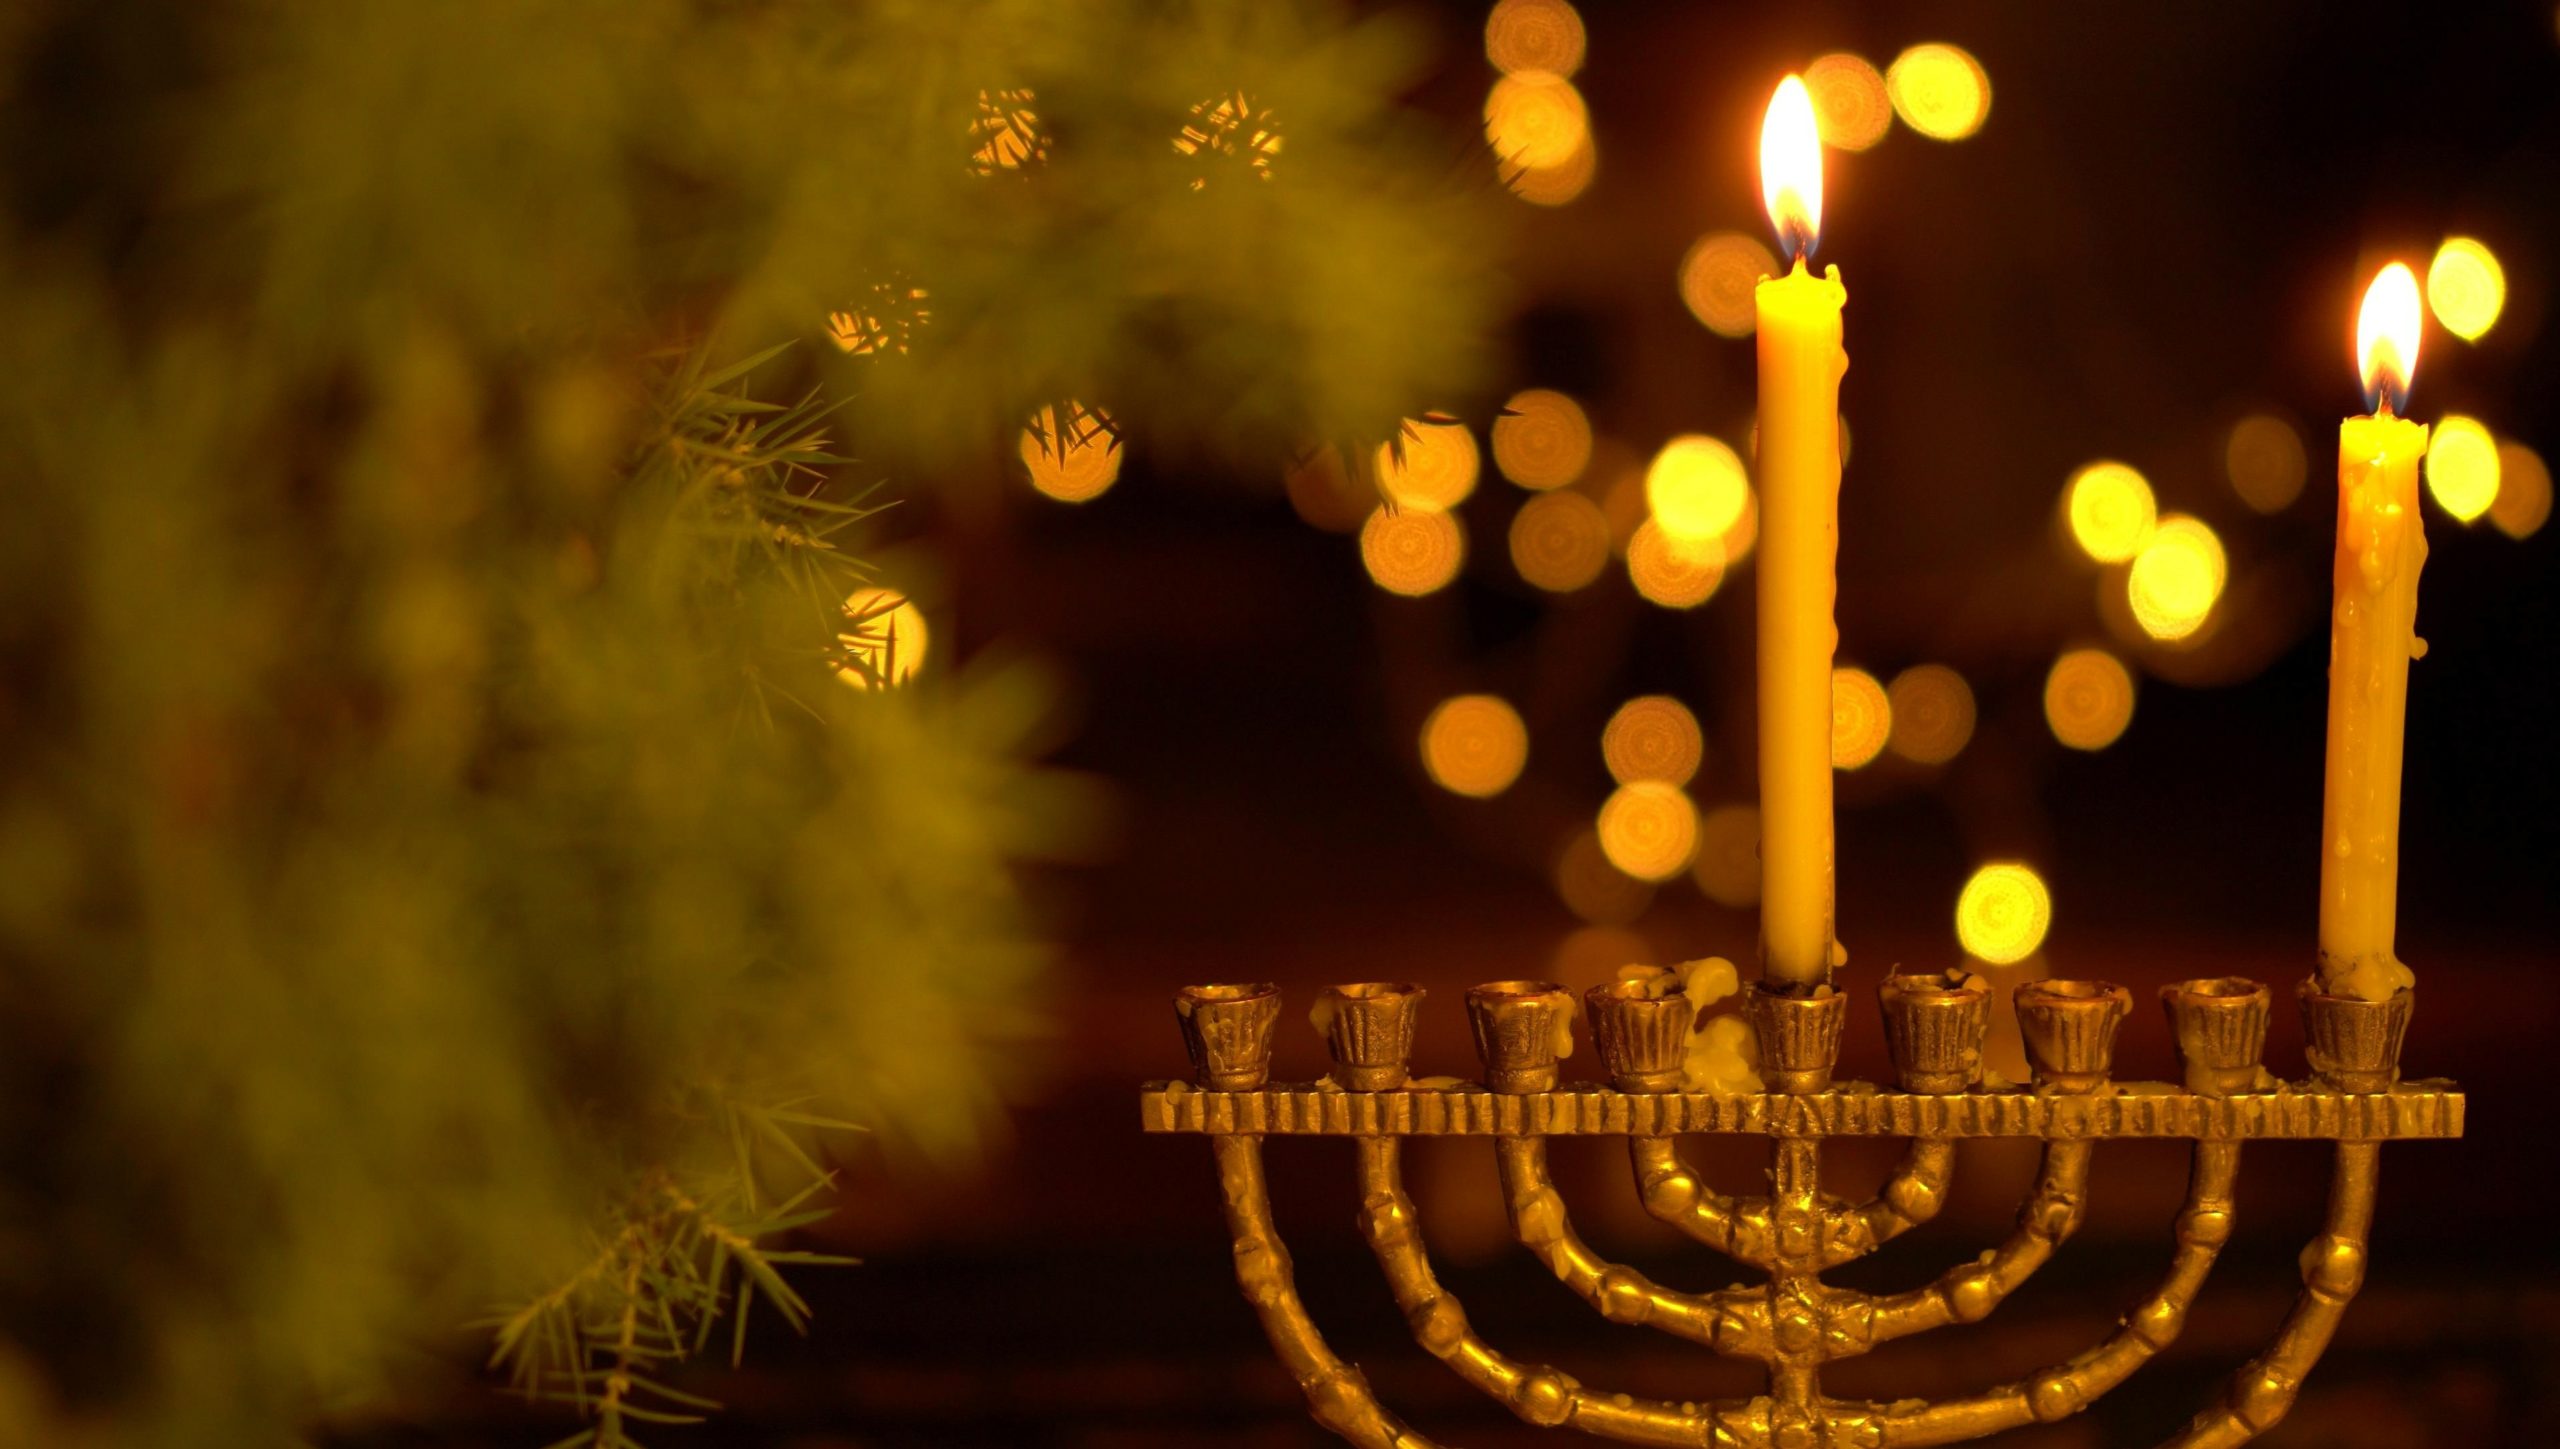 Hanukkah Why did Jesus celebrate the Feast of Dedication?